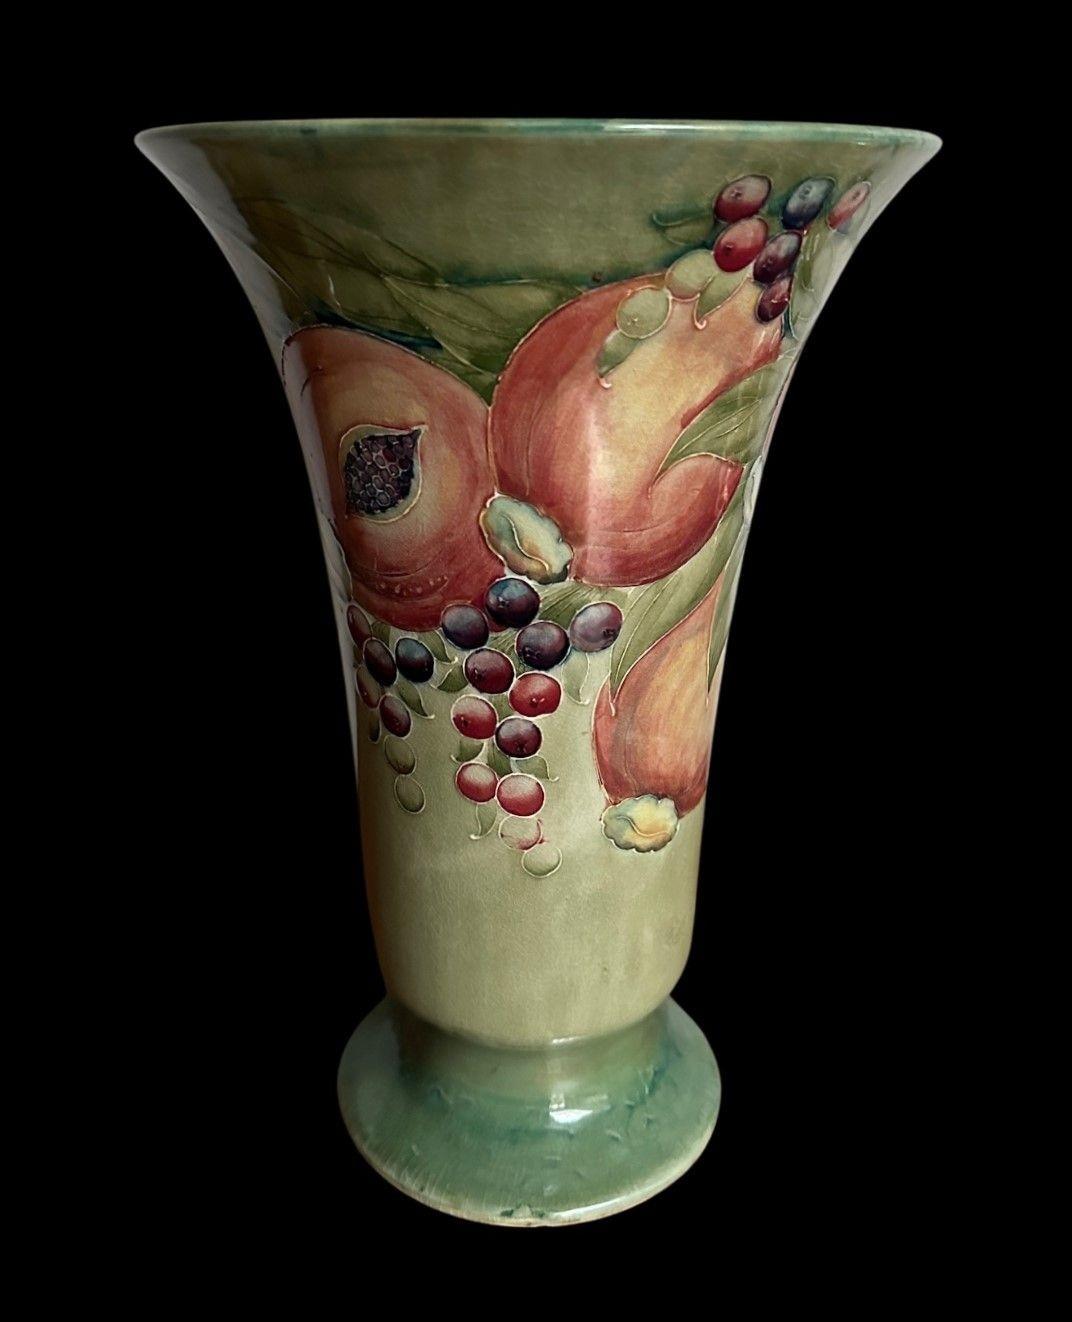 5474
Grand vase à pied William Moorcroft, décoré d'un motif de grenade sur un fond vert Caledon.
Craquelures typiques et une minuscule entaille à la bordure du pied.
Vers 1912
30 cm de haut, 20,5 cm de large